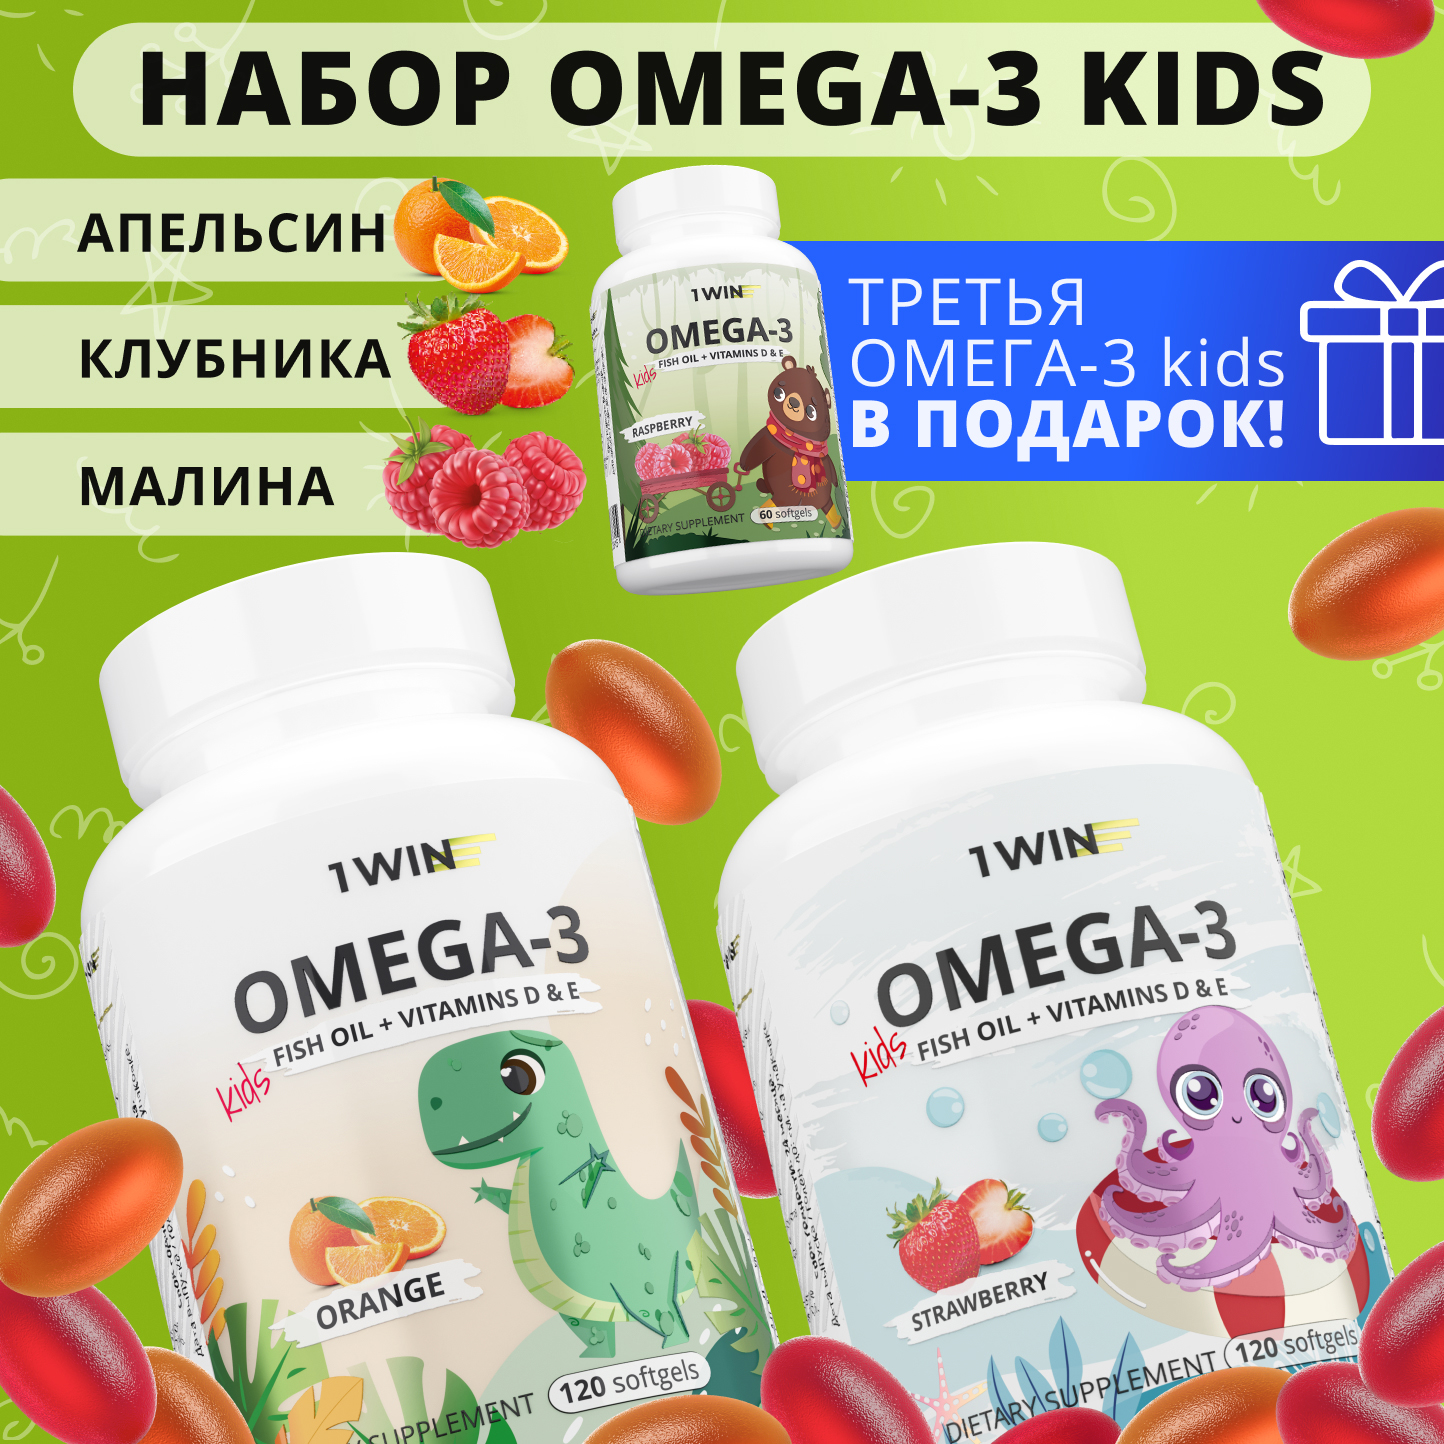 Omega 3 kids 1WIN с витаминами D и E набор апельсин, клубника и малина капсулы 120 шт